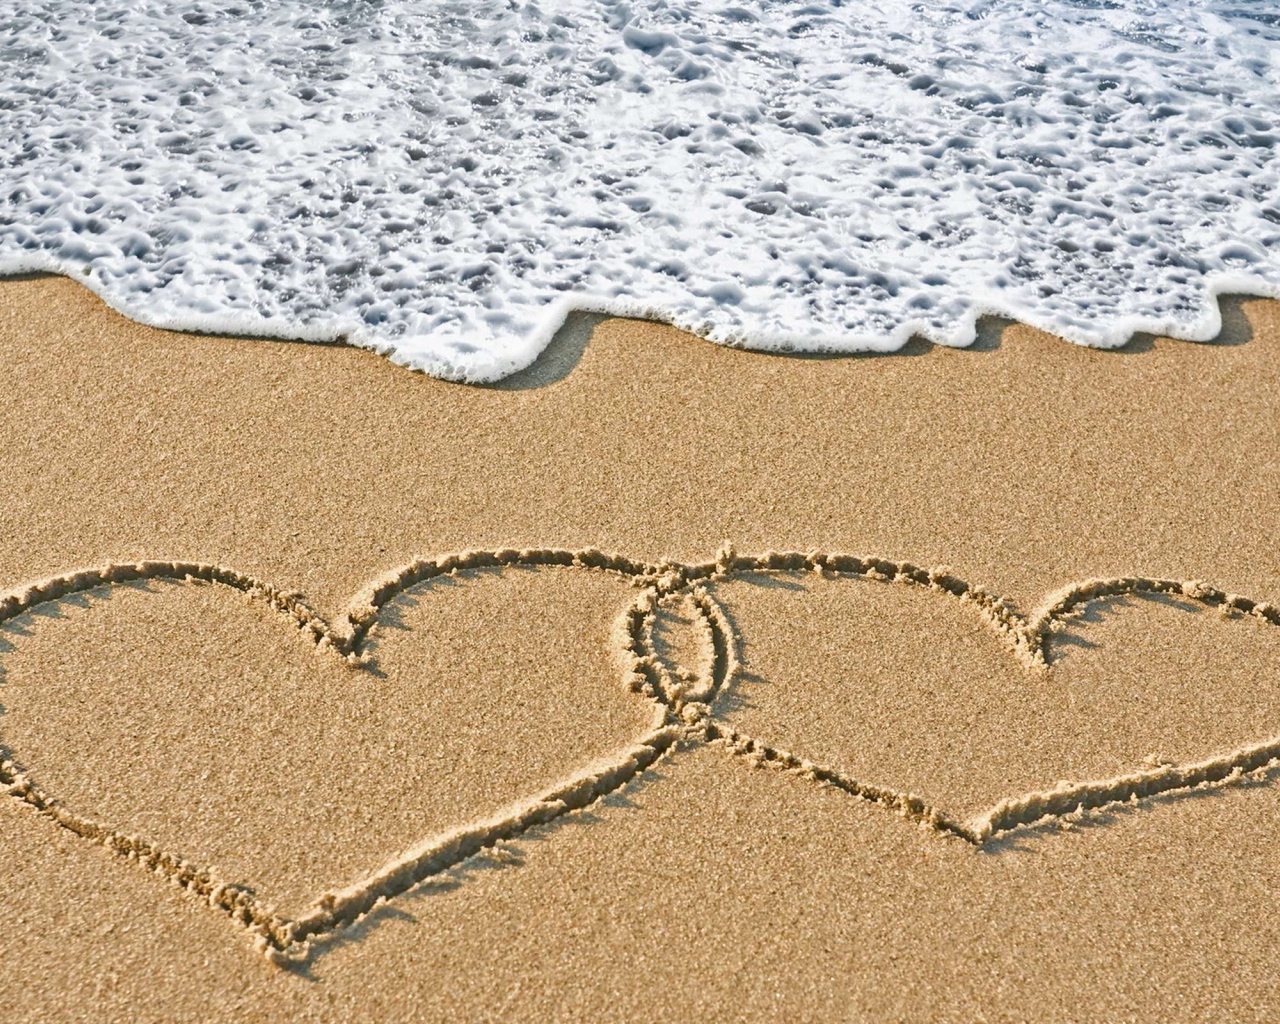 Два сердца на морском песке